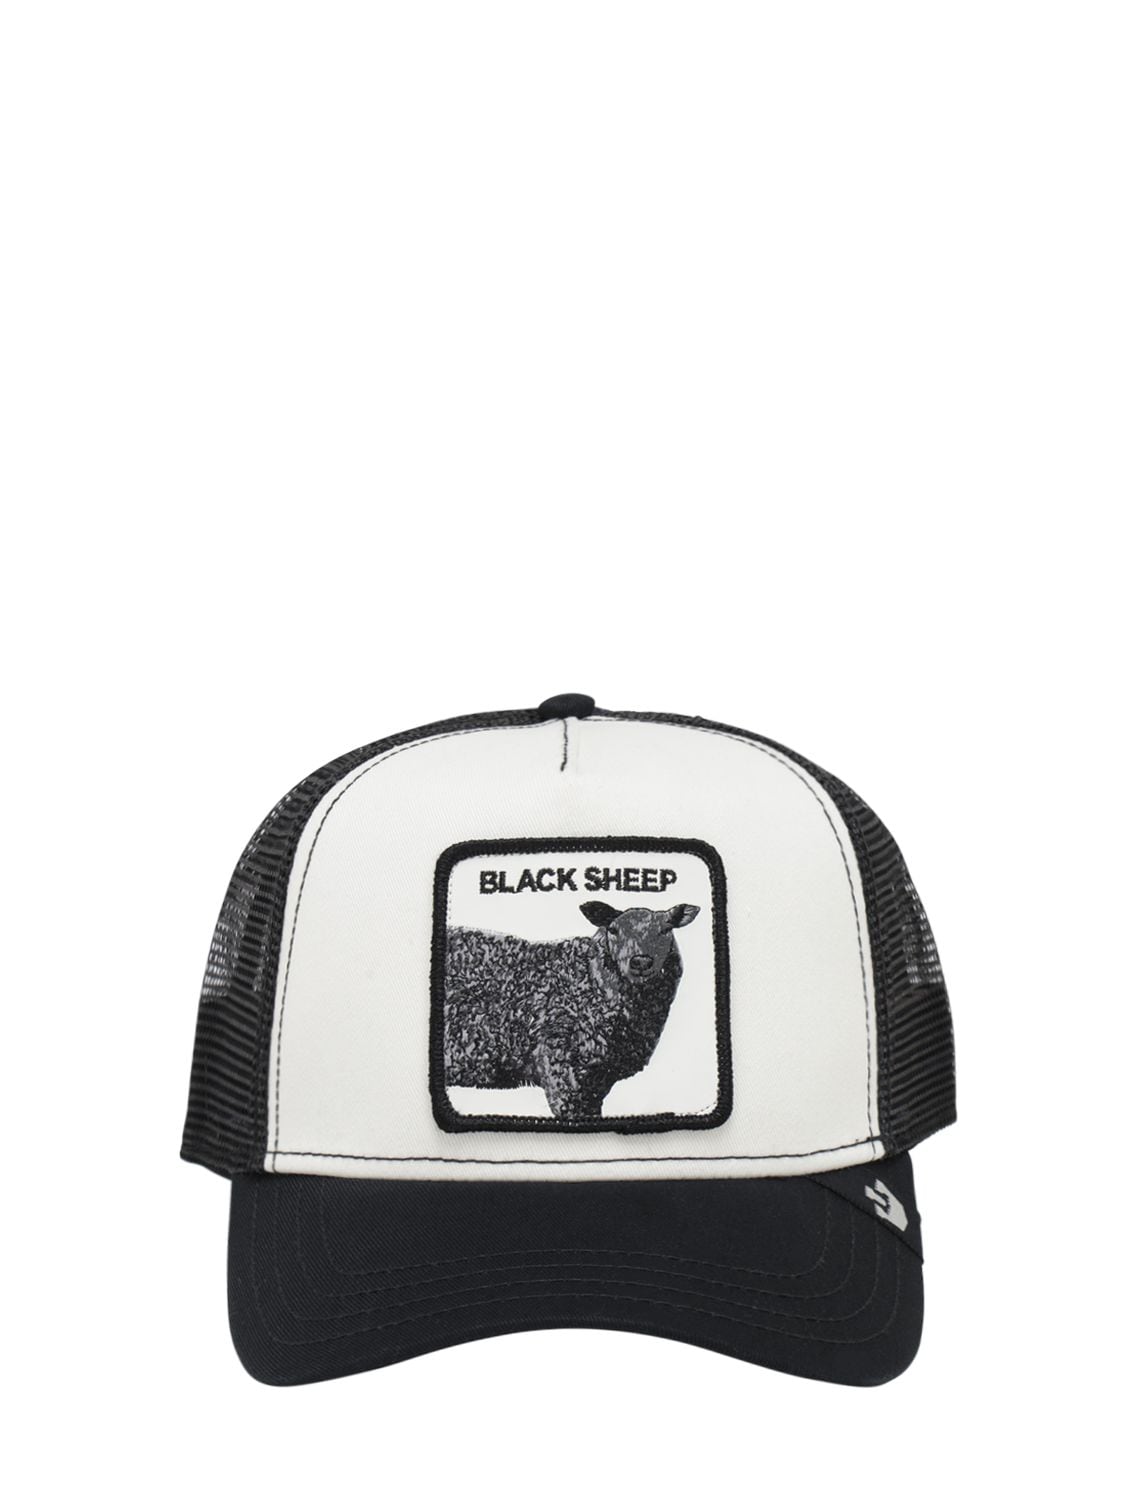 Goorin Bros Revolter Patch Trucker Hat In Black